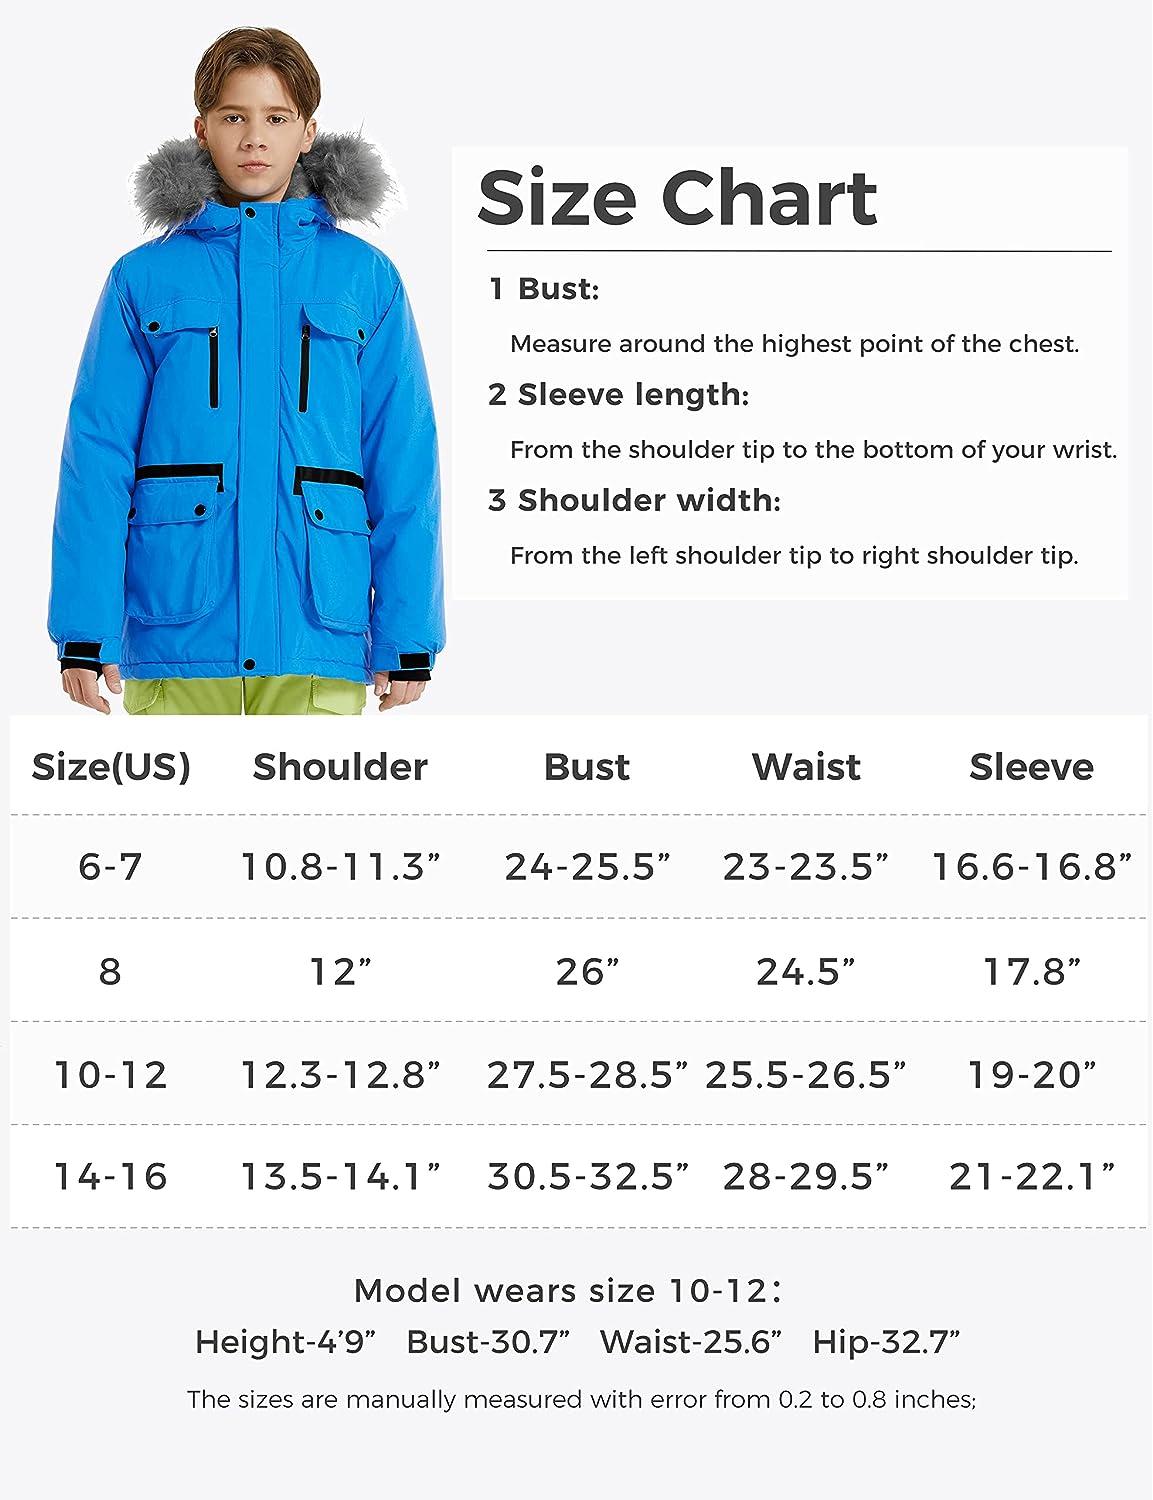 Wantdo Kids Boys' Fleece/Lined Snowboarding Jacket Weatherproof